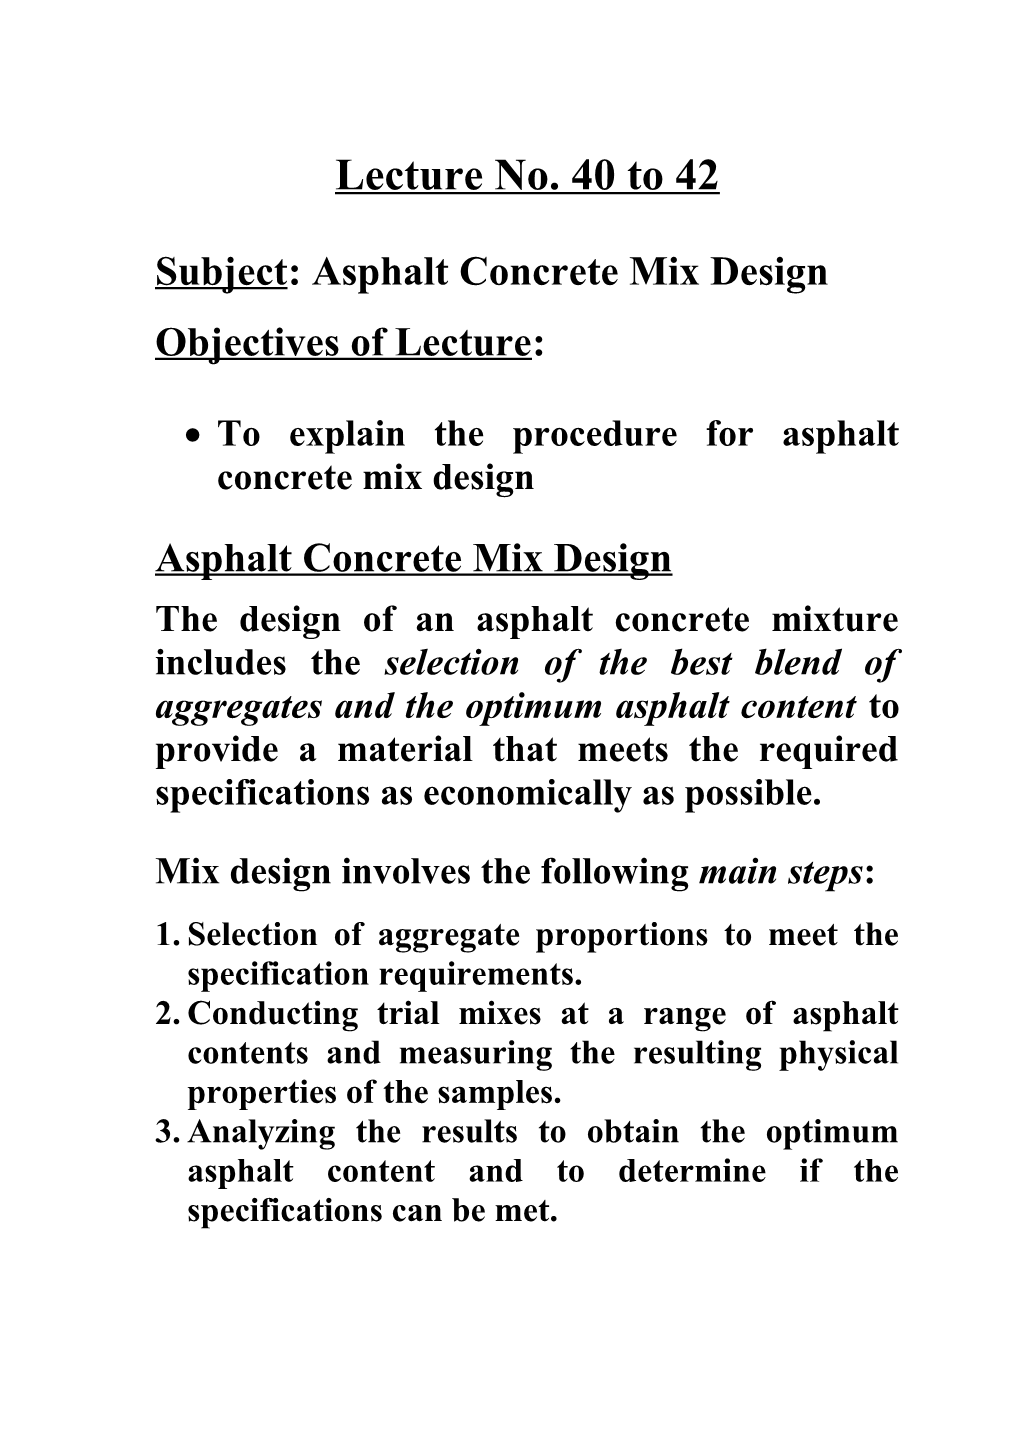 Subject: Asphalt Concrete Mix Design